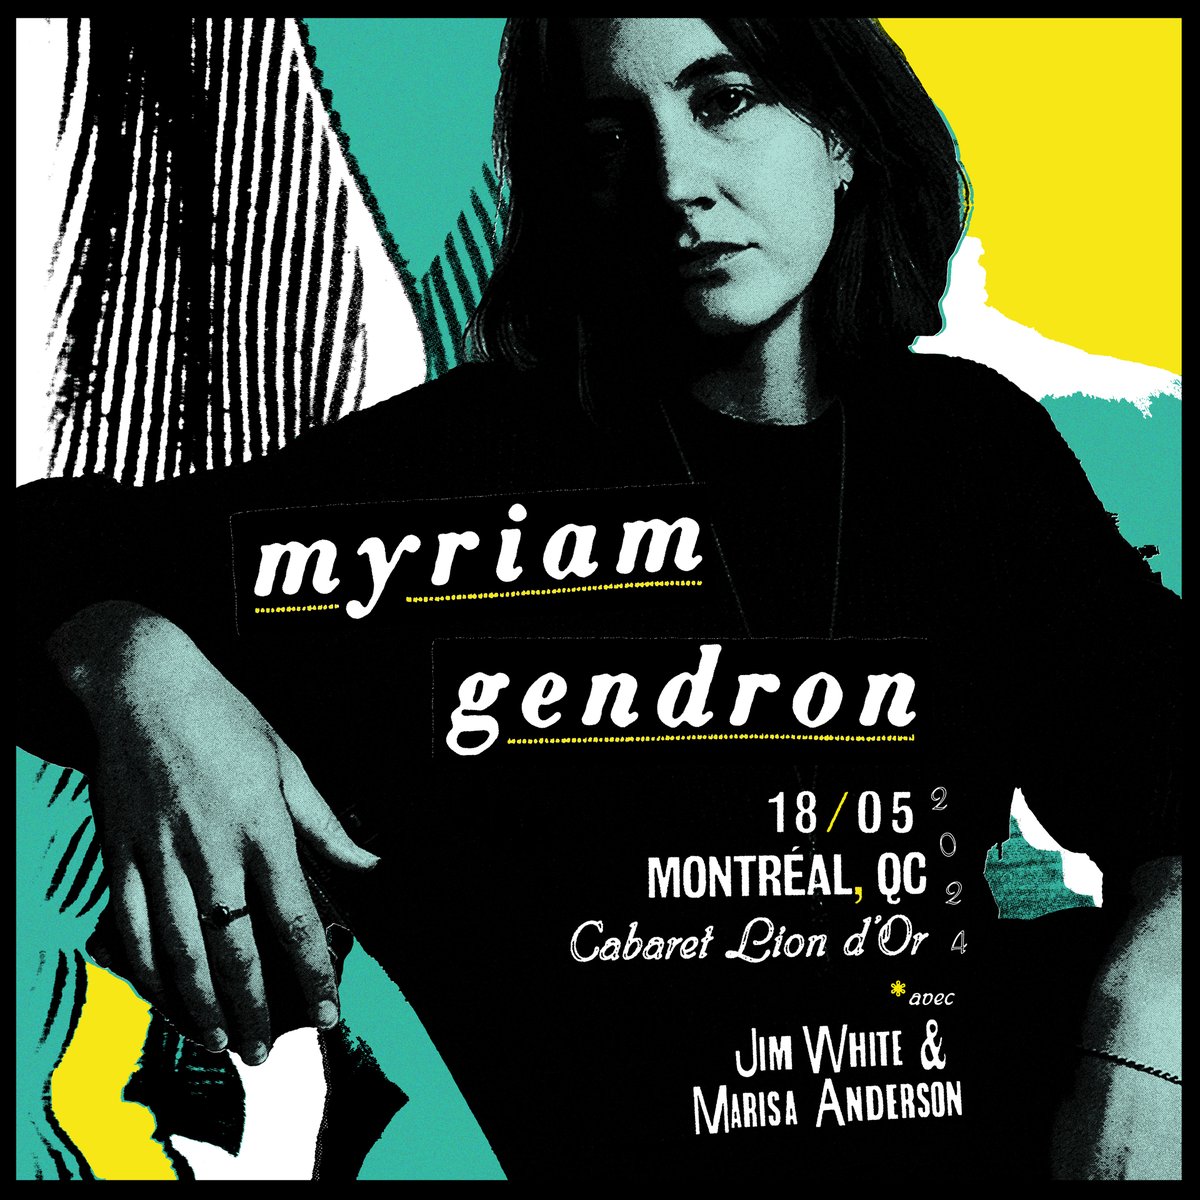 POP Montréal et Heavy Trip présentent: Myriam Gendron + Jim White + Marisa Anderson, le 18 mai au Cabaret Lion D'or: fb.me/e/1FilNzv9v | Écoutez 'Mayday', le dernier album de Myriam Gendron sortie aujourd'hui: myriamgendron.komi.io @_HEAVYTRIP_ @cabaretliondor